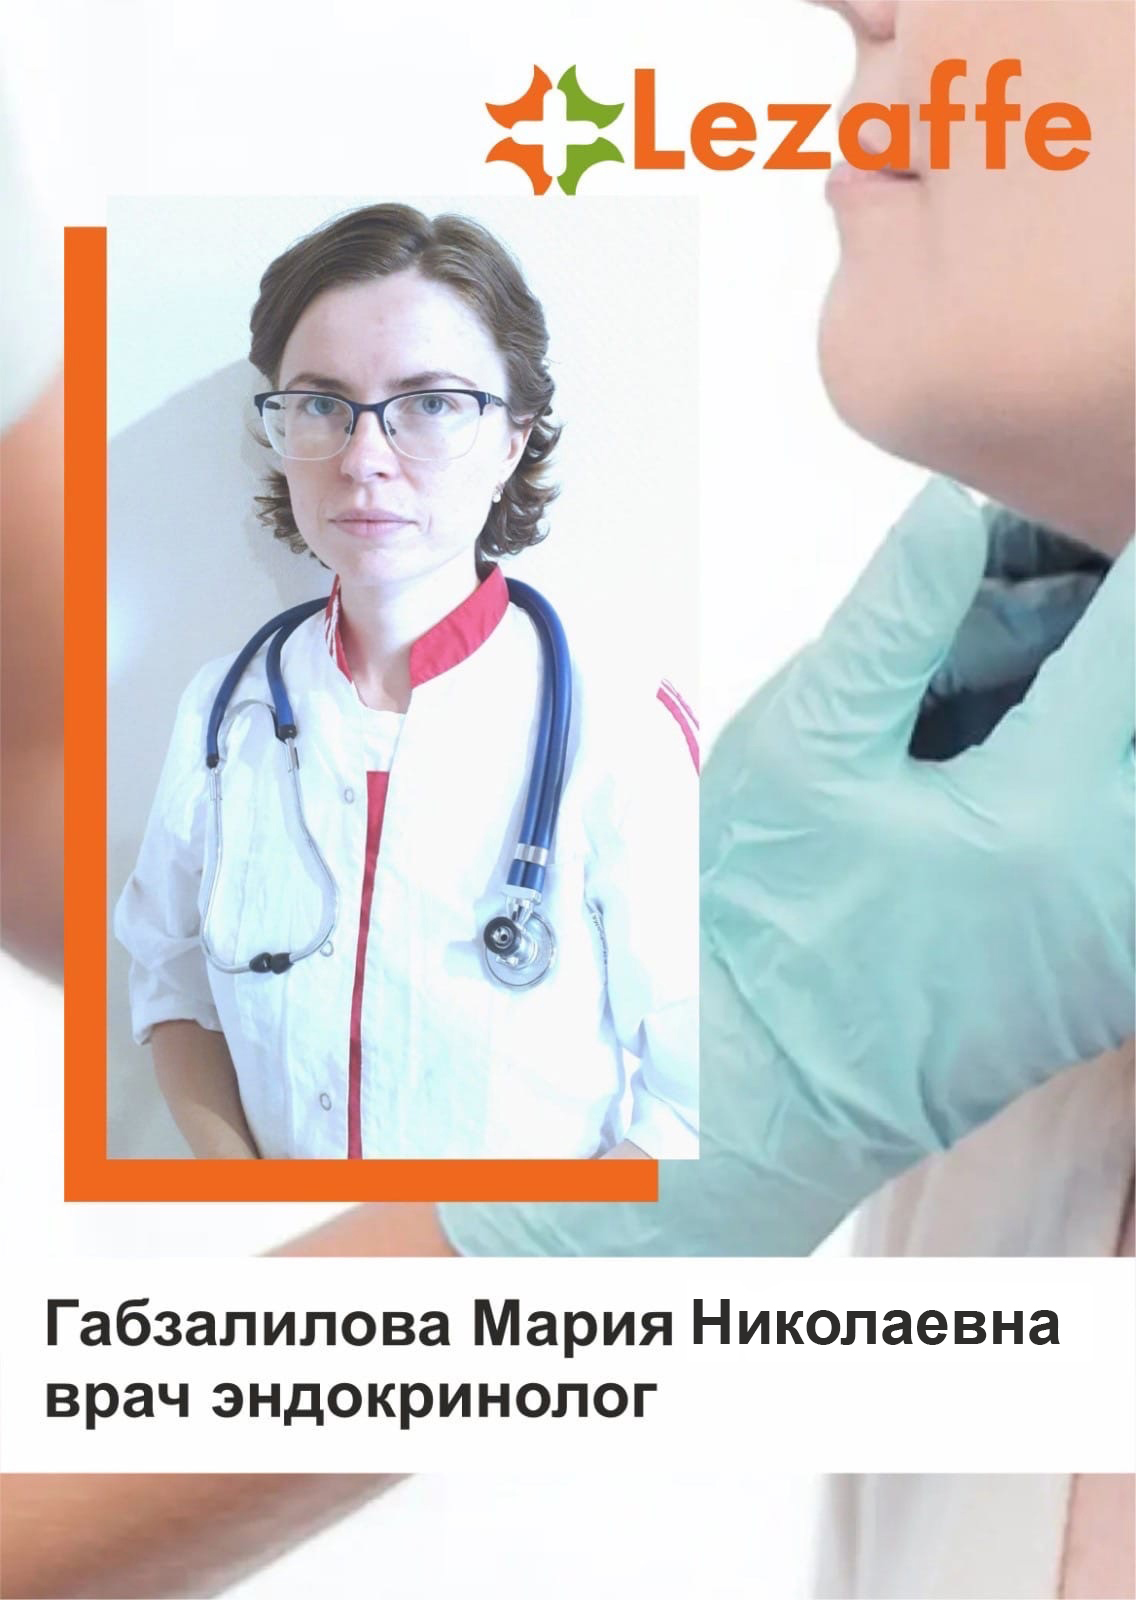 Габзалилова Мария Николаевна - врач эндокринолог в клинике Lezaffe г. Нягань